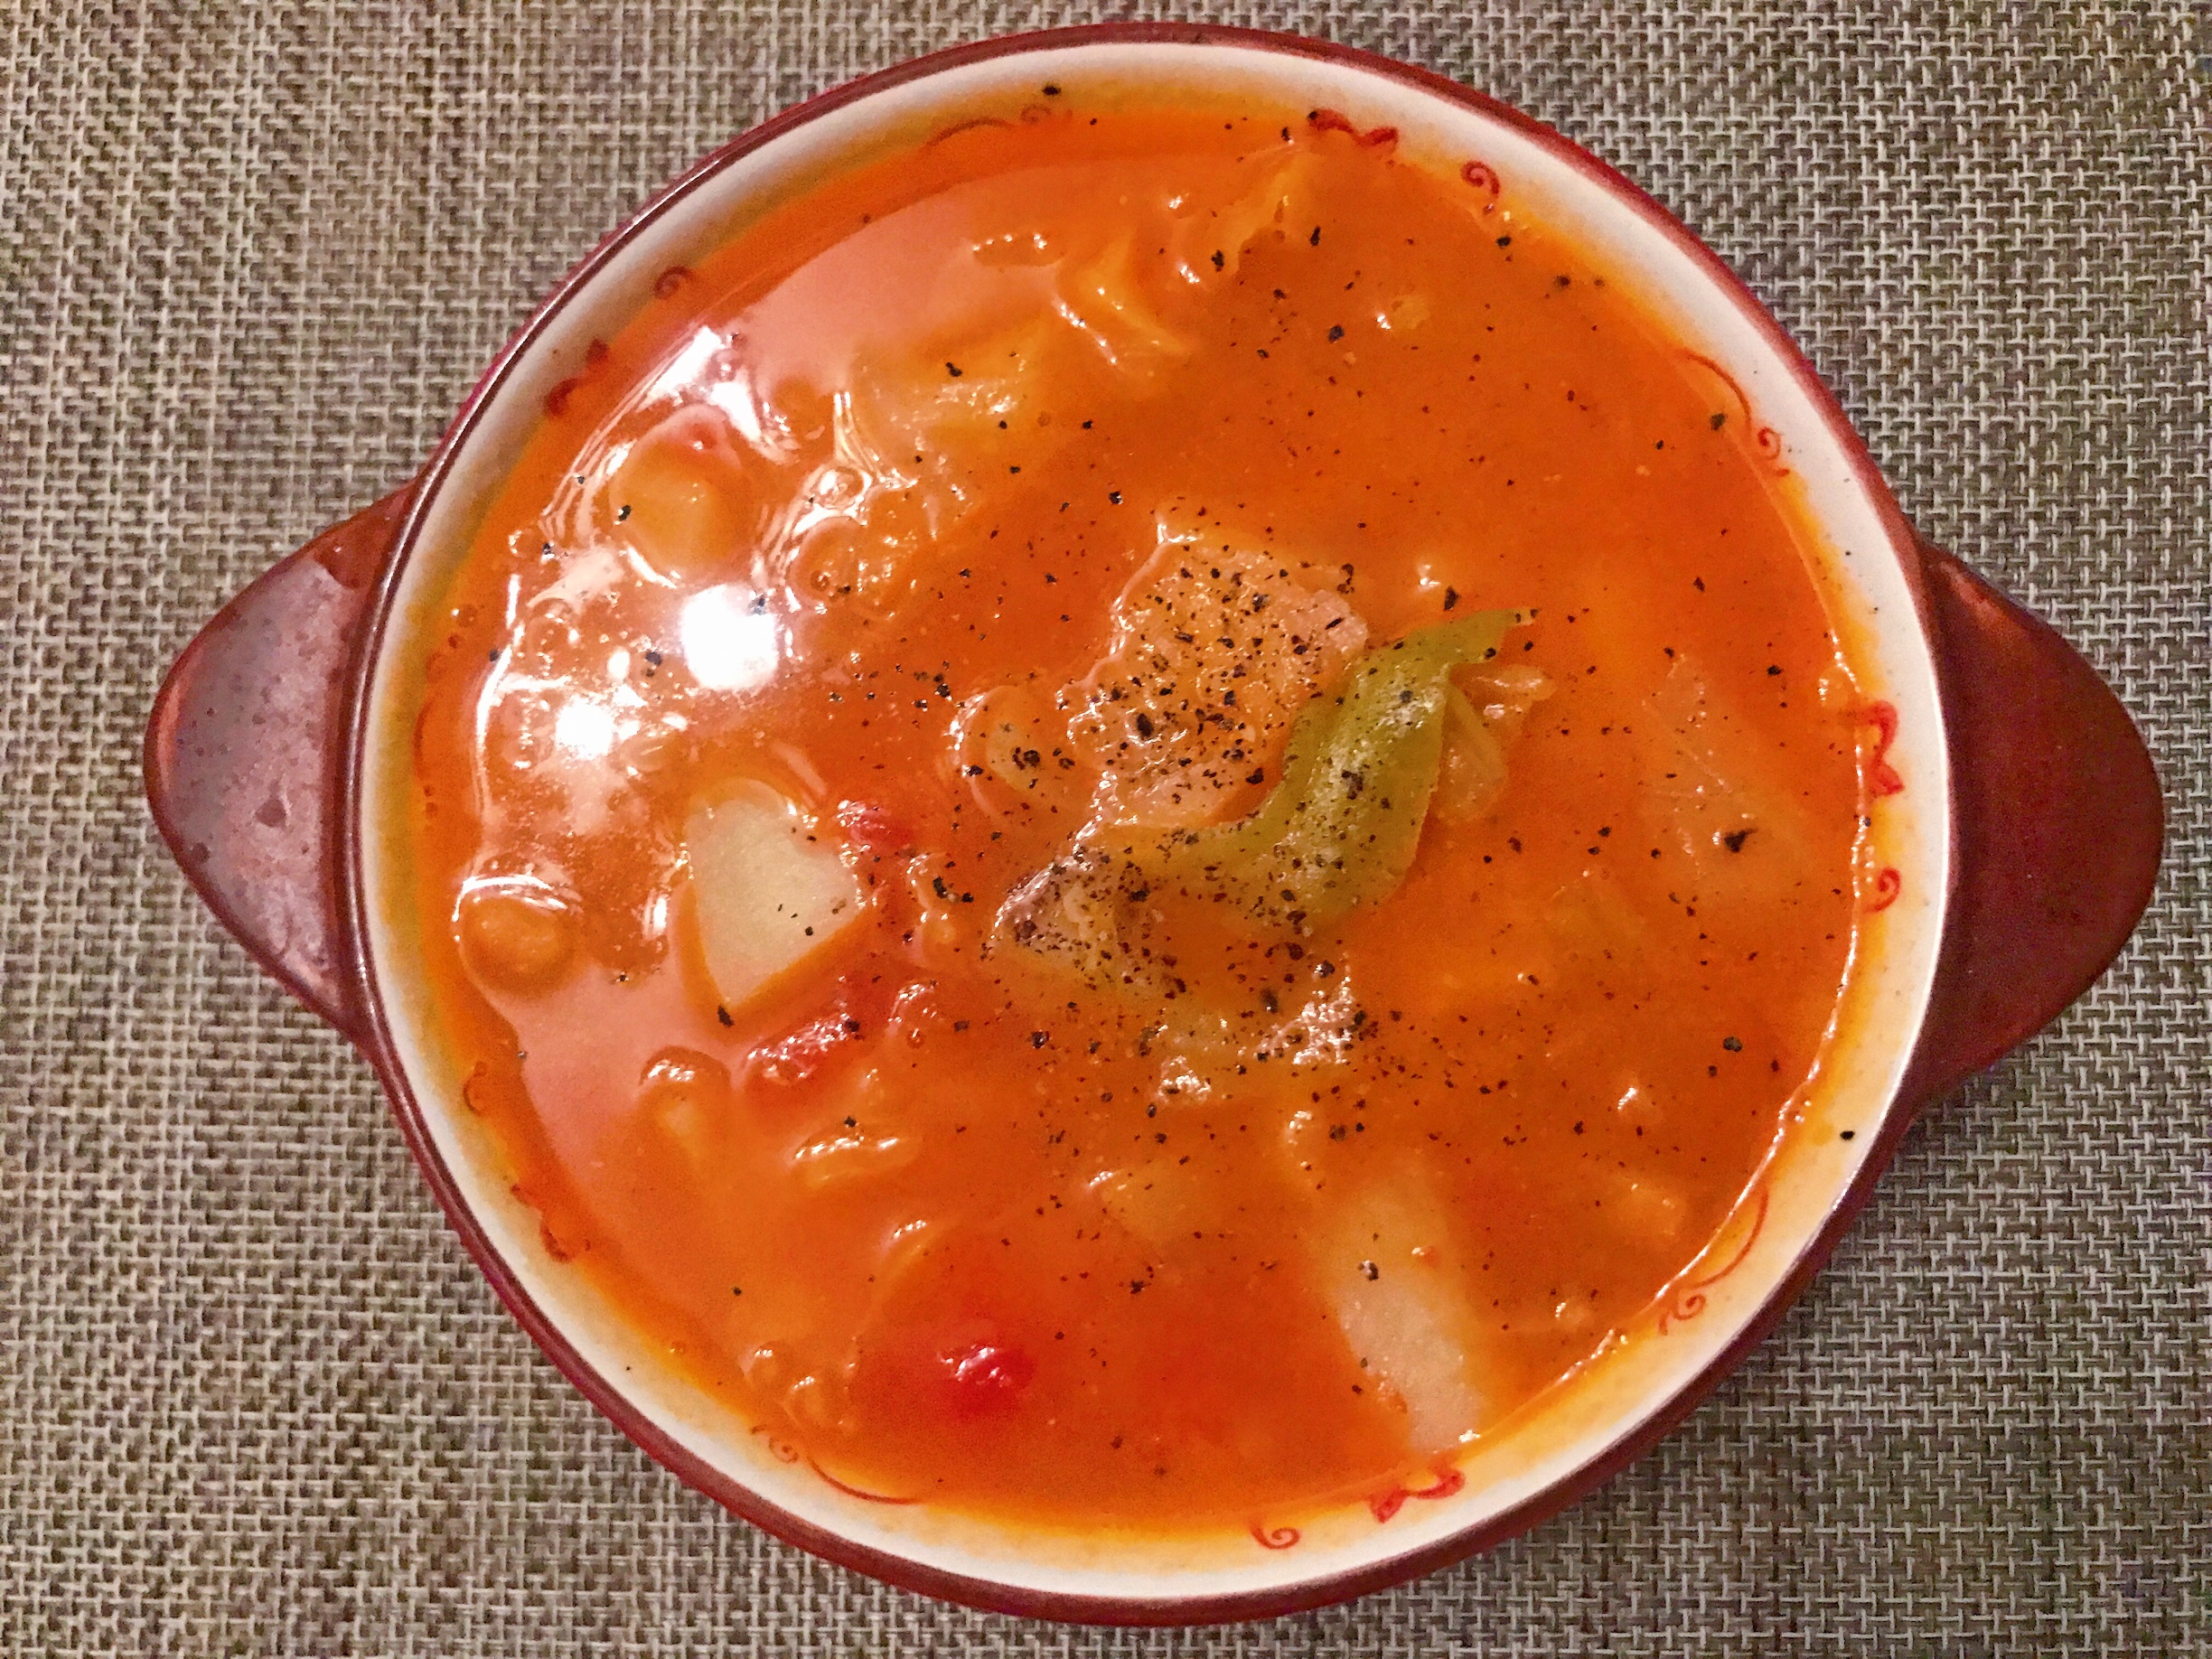 歌王朝を集めるスープ-間違いのないバージョンの実践